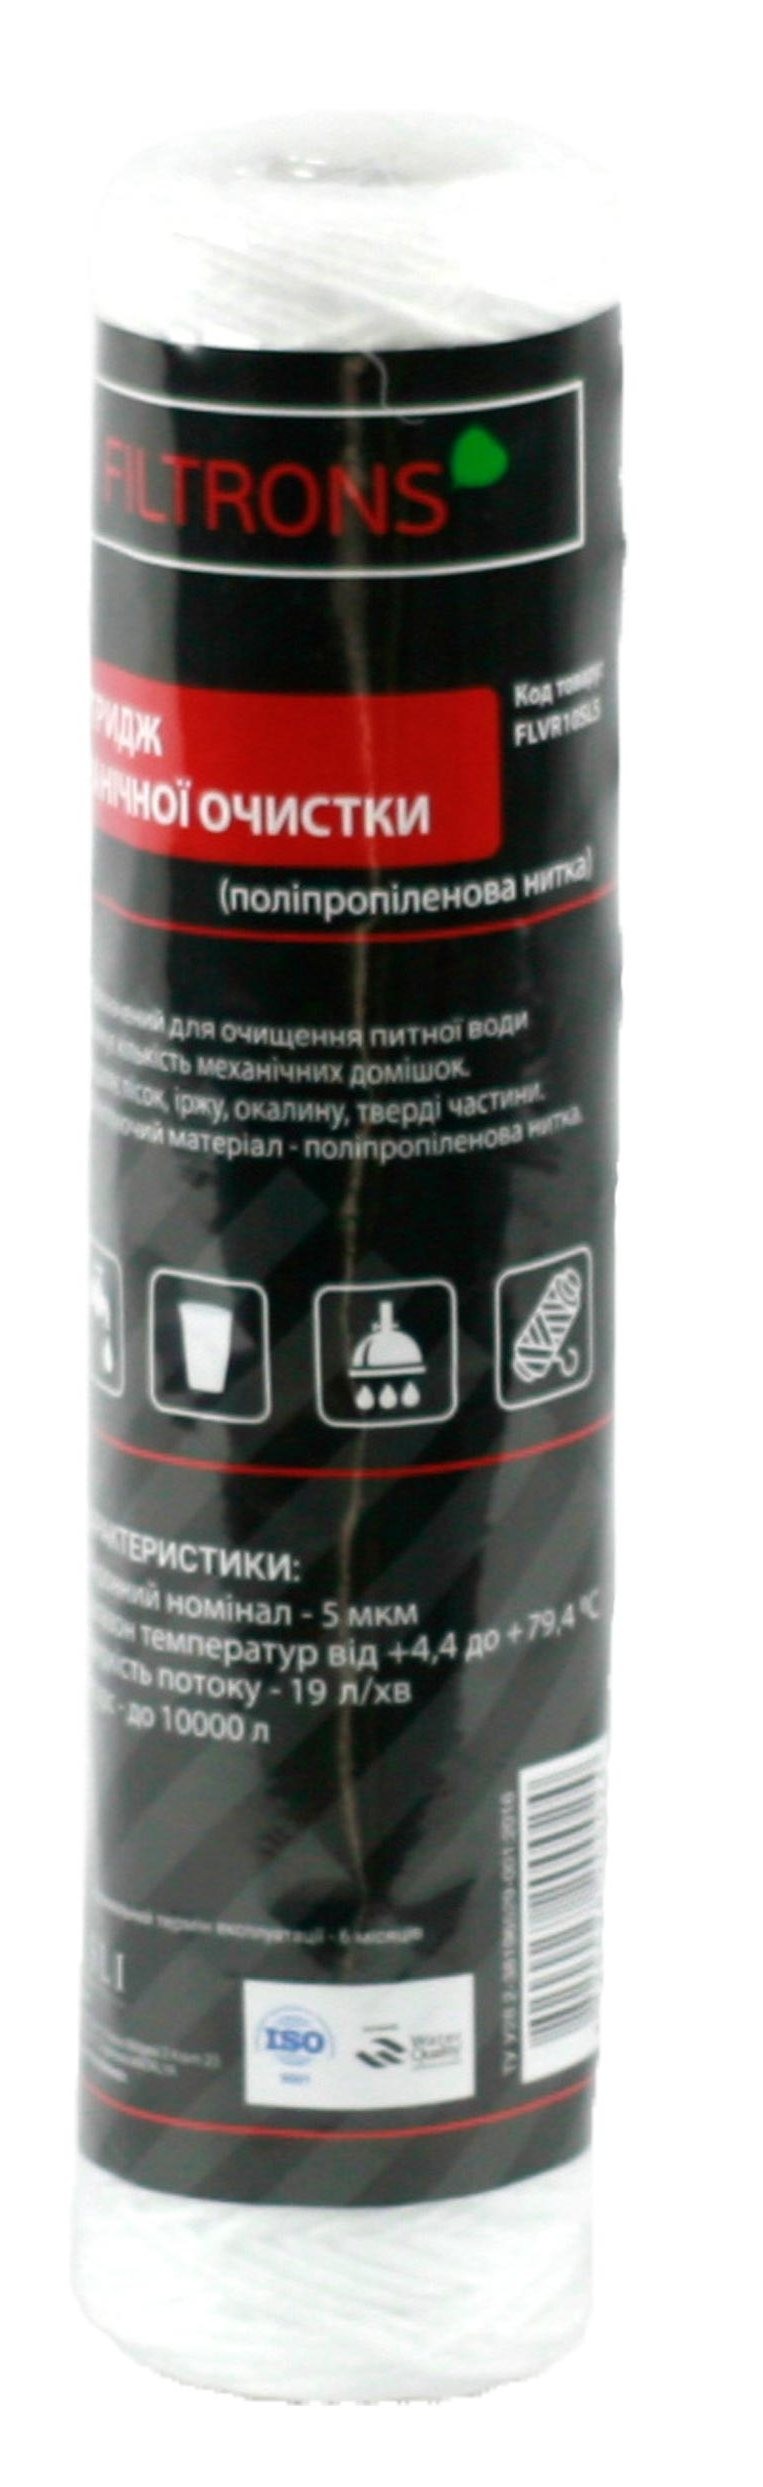 Картридж для горячей воды Filtrons 10' SLIM 20 мкм (FLVR10SL20) в Киеве